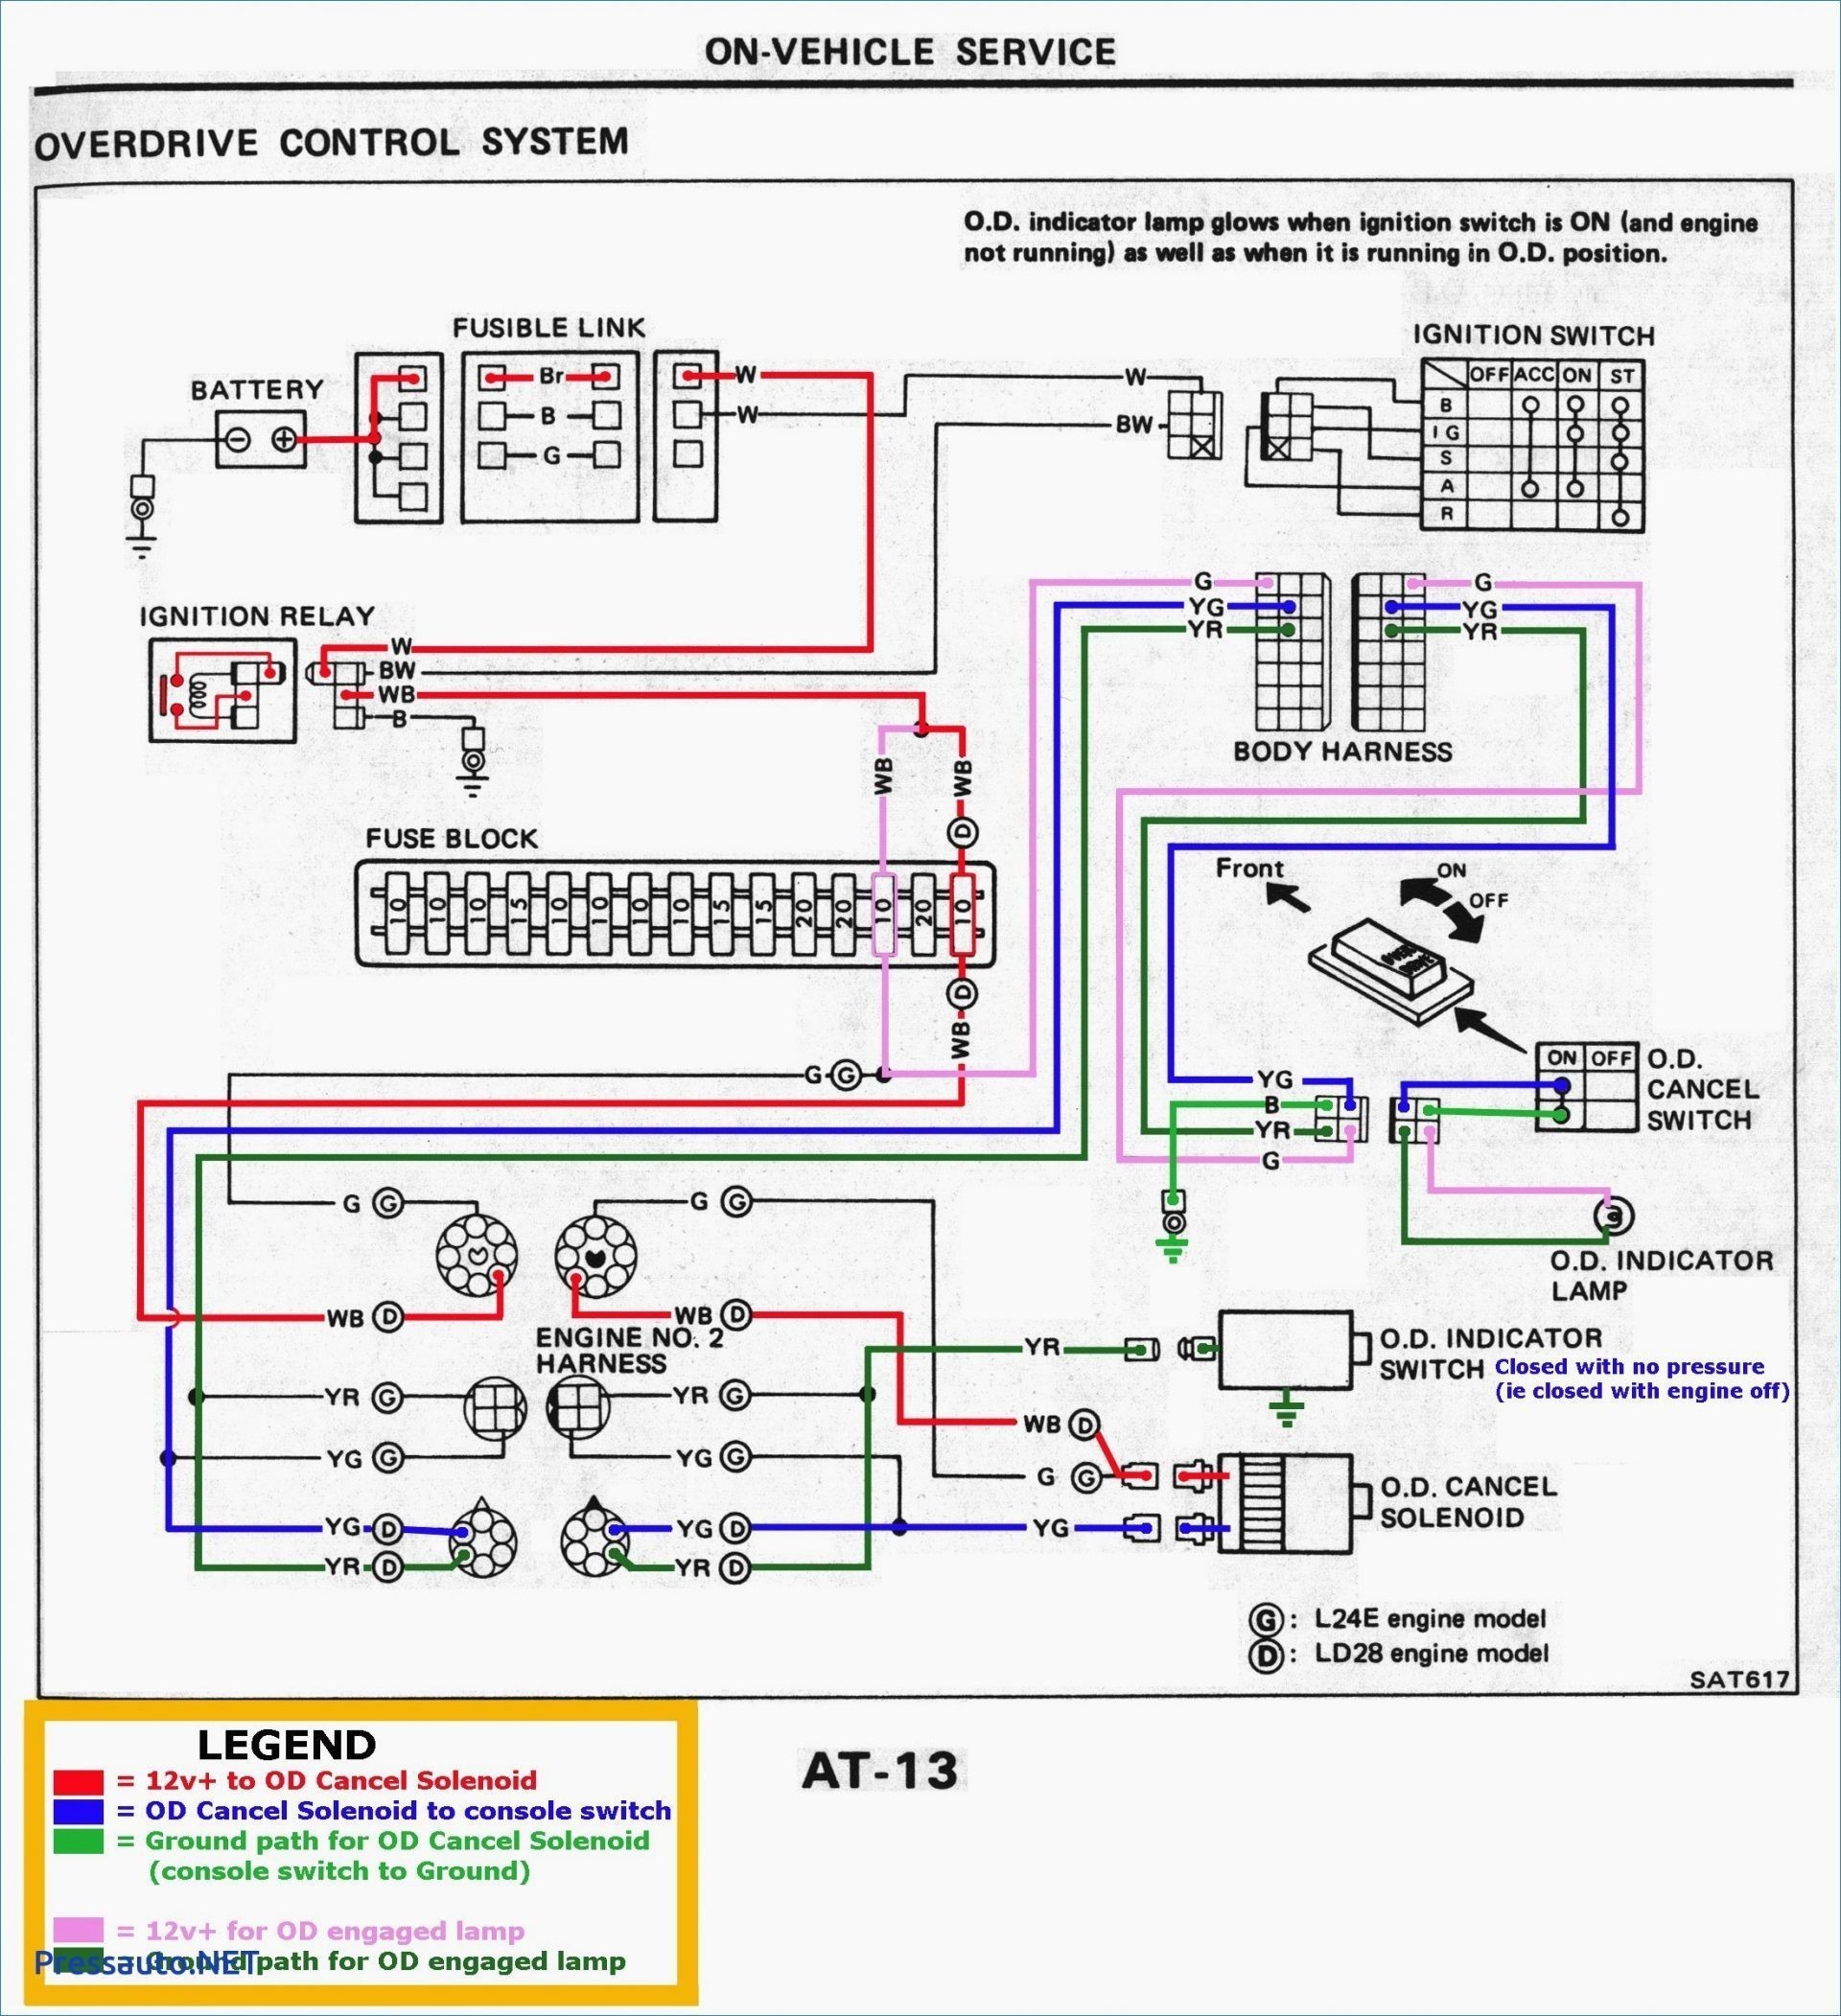 2002 Dodge Intrepid Engine Diagram 1997 Dodge Intrepid 3 5 Engine Diagram Schematics Wiring Diagrams • Of 2002 Dodge Intrepid Engine Diagram